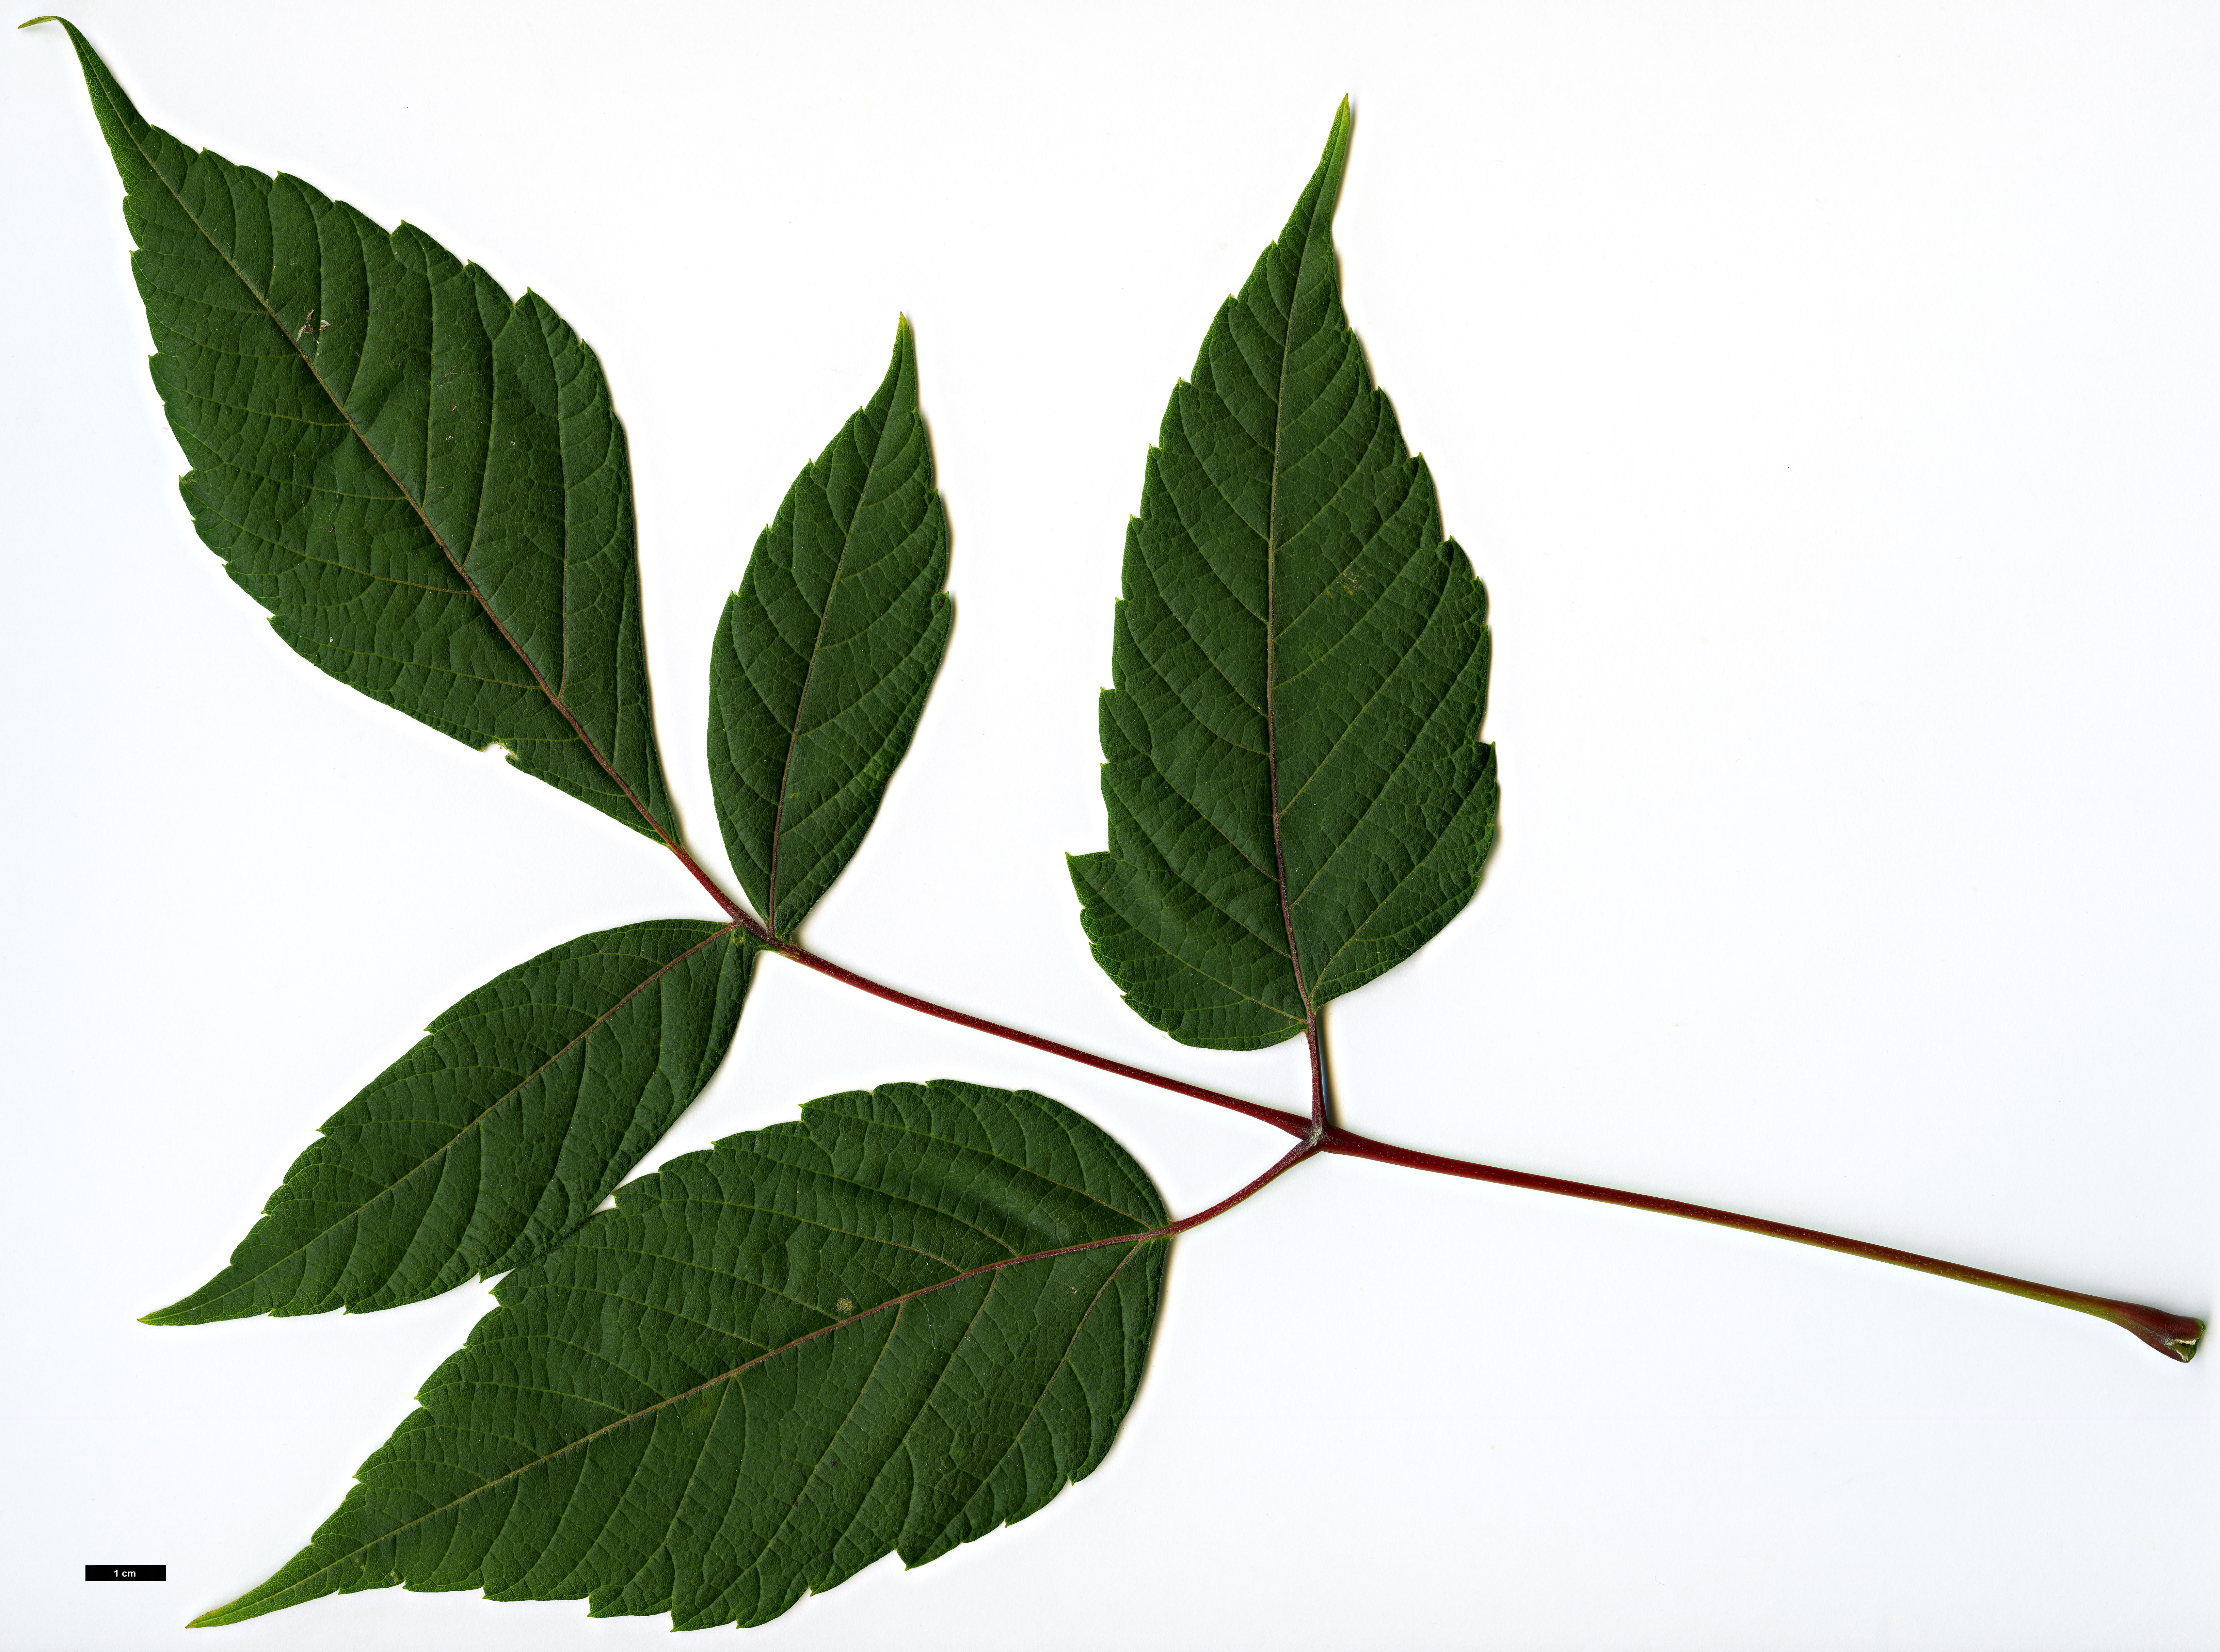 High resolution image: Family: Sapindaceae - Genus: Acer - Taxon: negundo - SpeciesSub: subsp. mexicanum